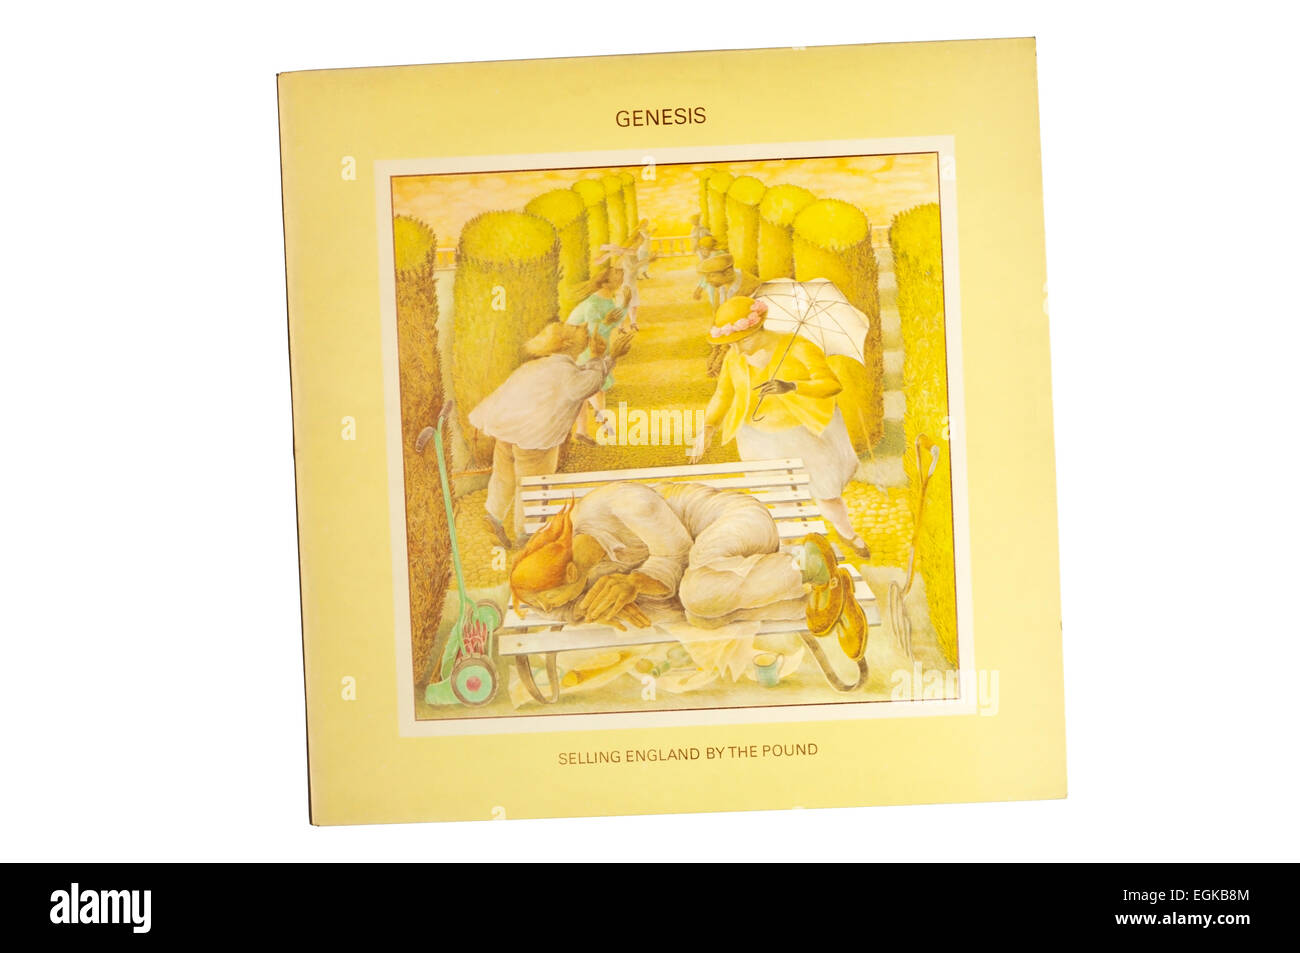 La vente de l'Angleterre par le livre est le cinquième album studio du groupe de rock progressif Anglais Genesis, sorti en 1973 sur les registres de charisme. Banque D'Images